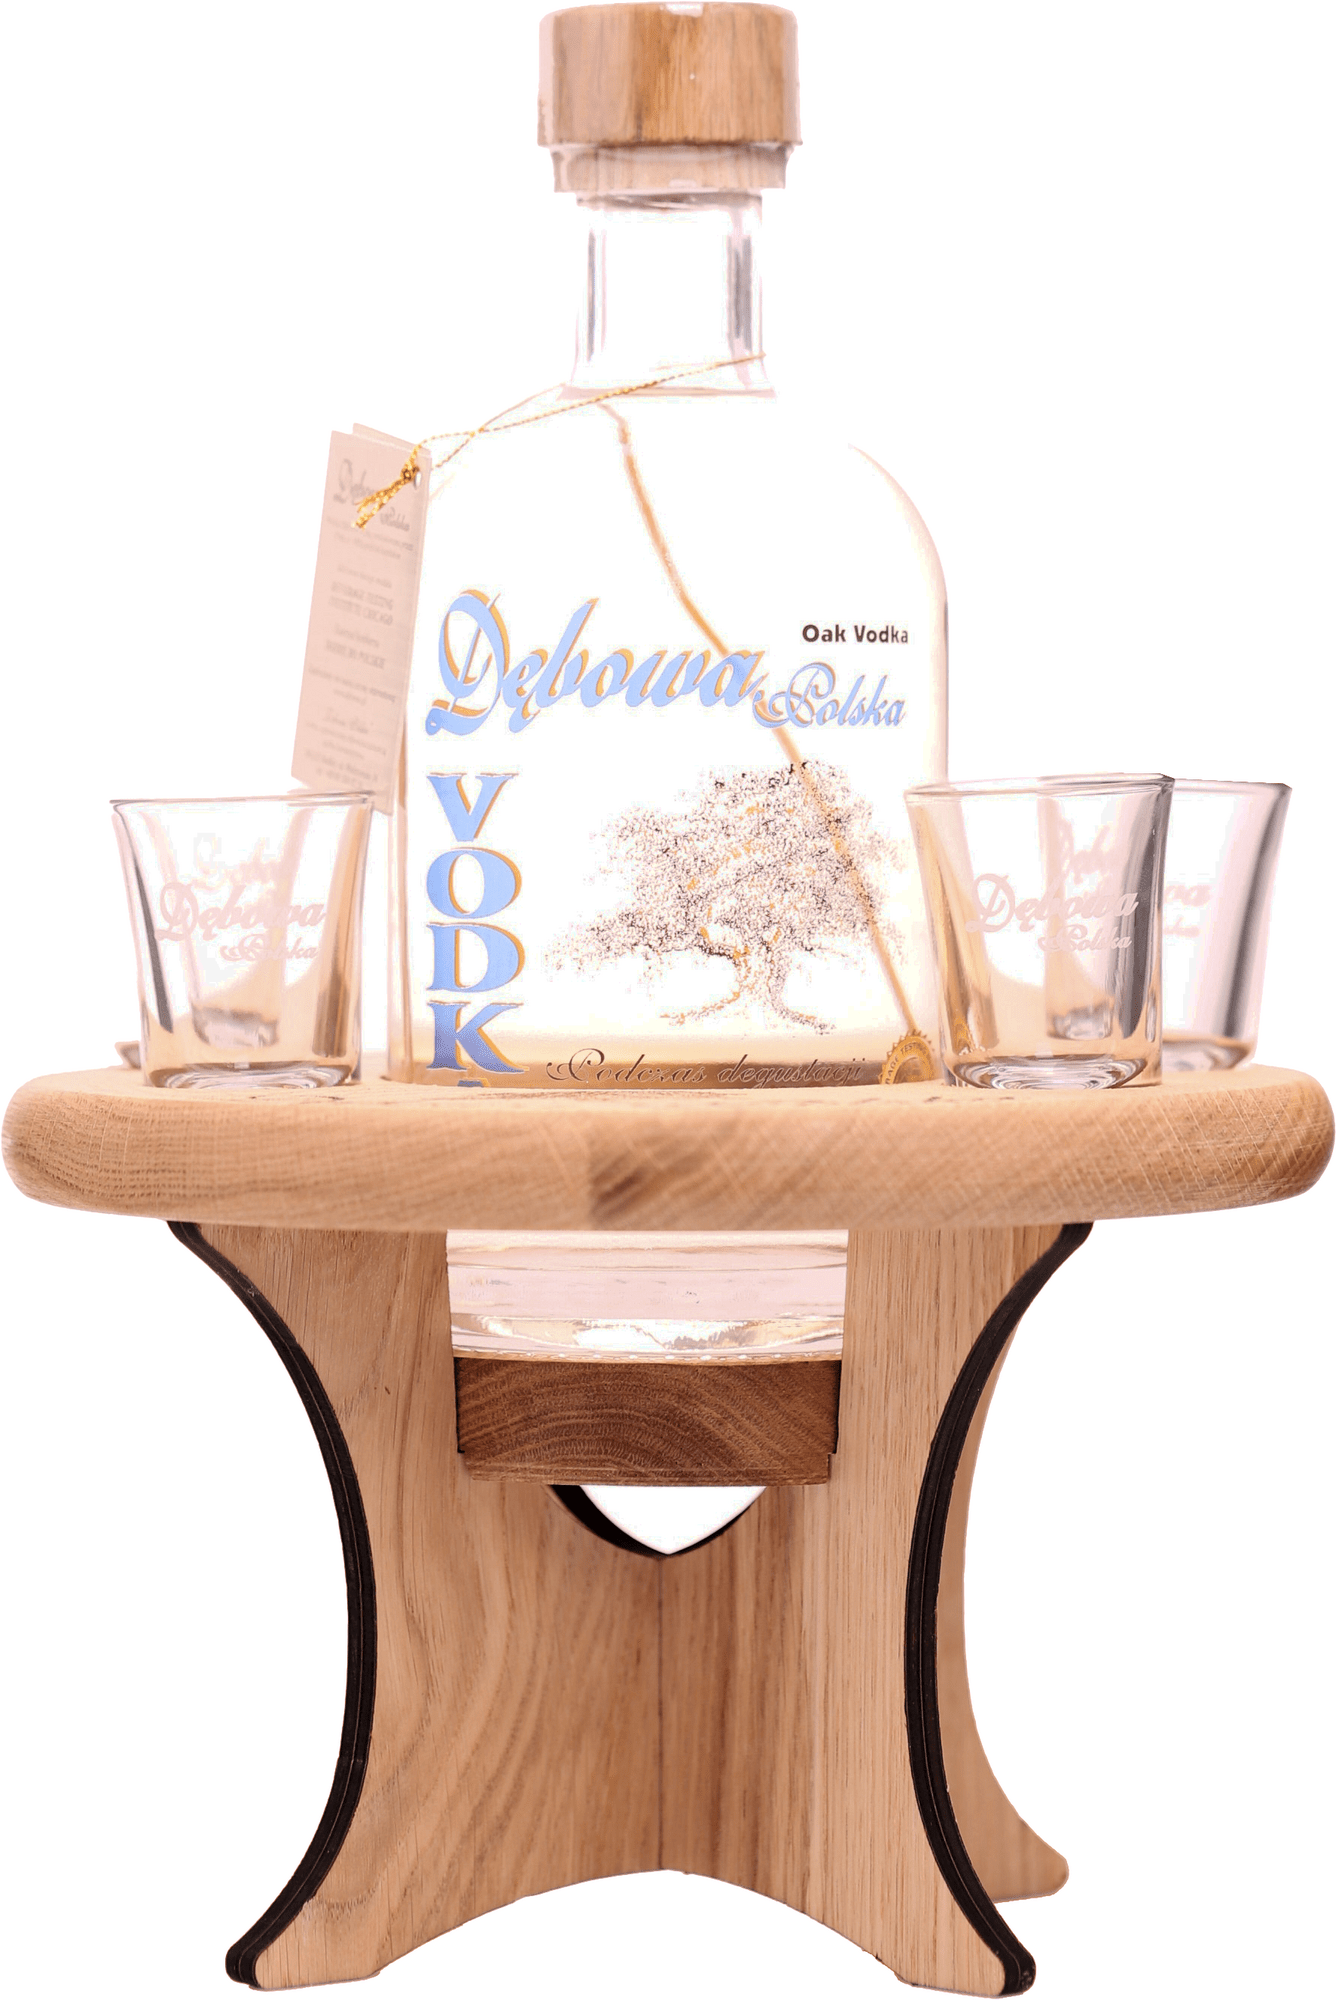 Debowa Oak Vodka Dubový stolček + 4 sklenice 40% 0,7l (darčekové balenie 4 poháre)